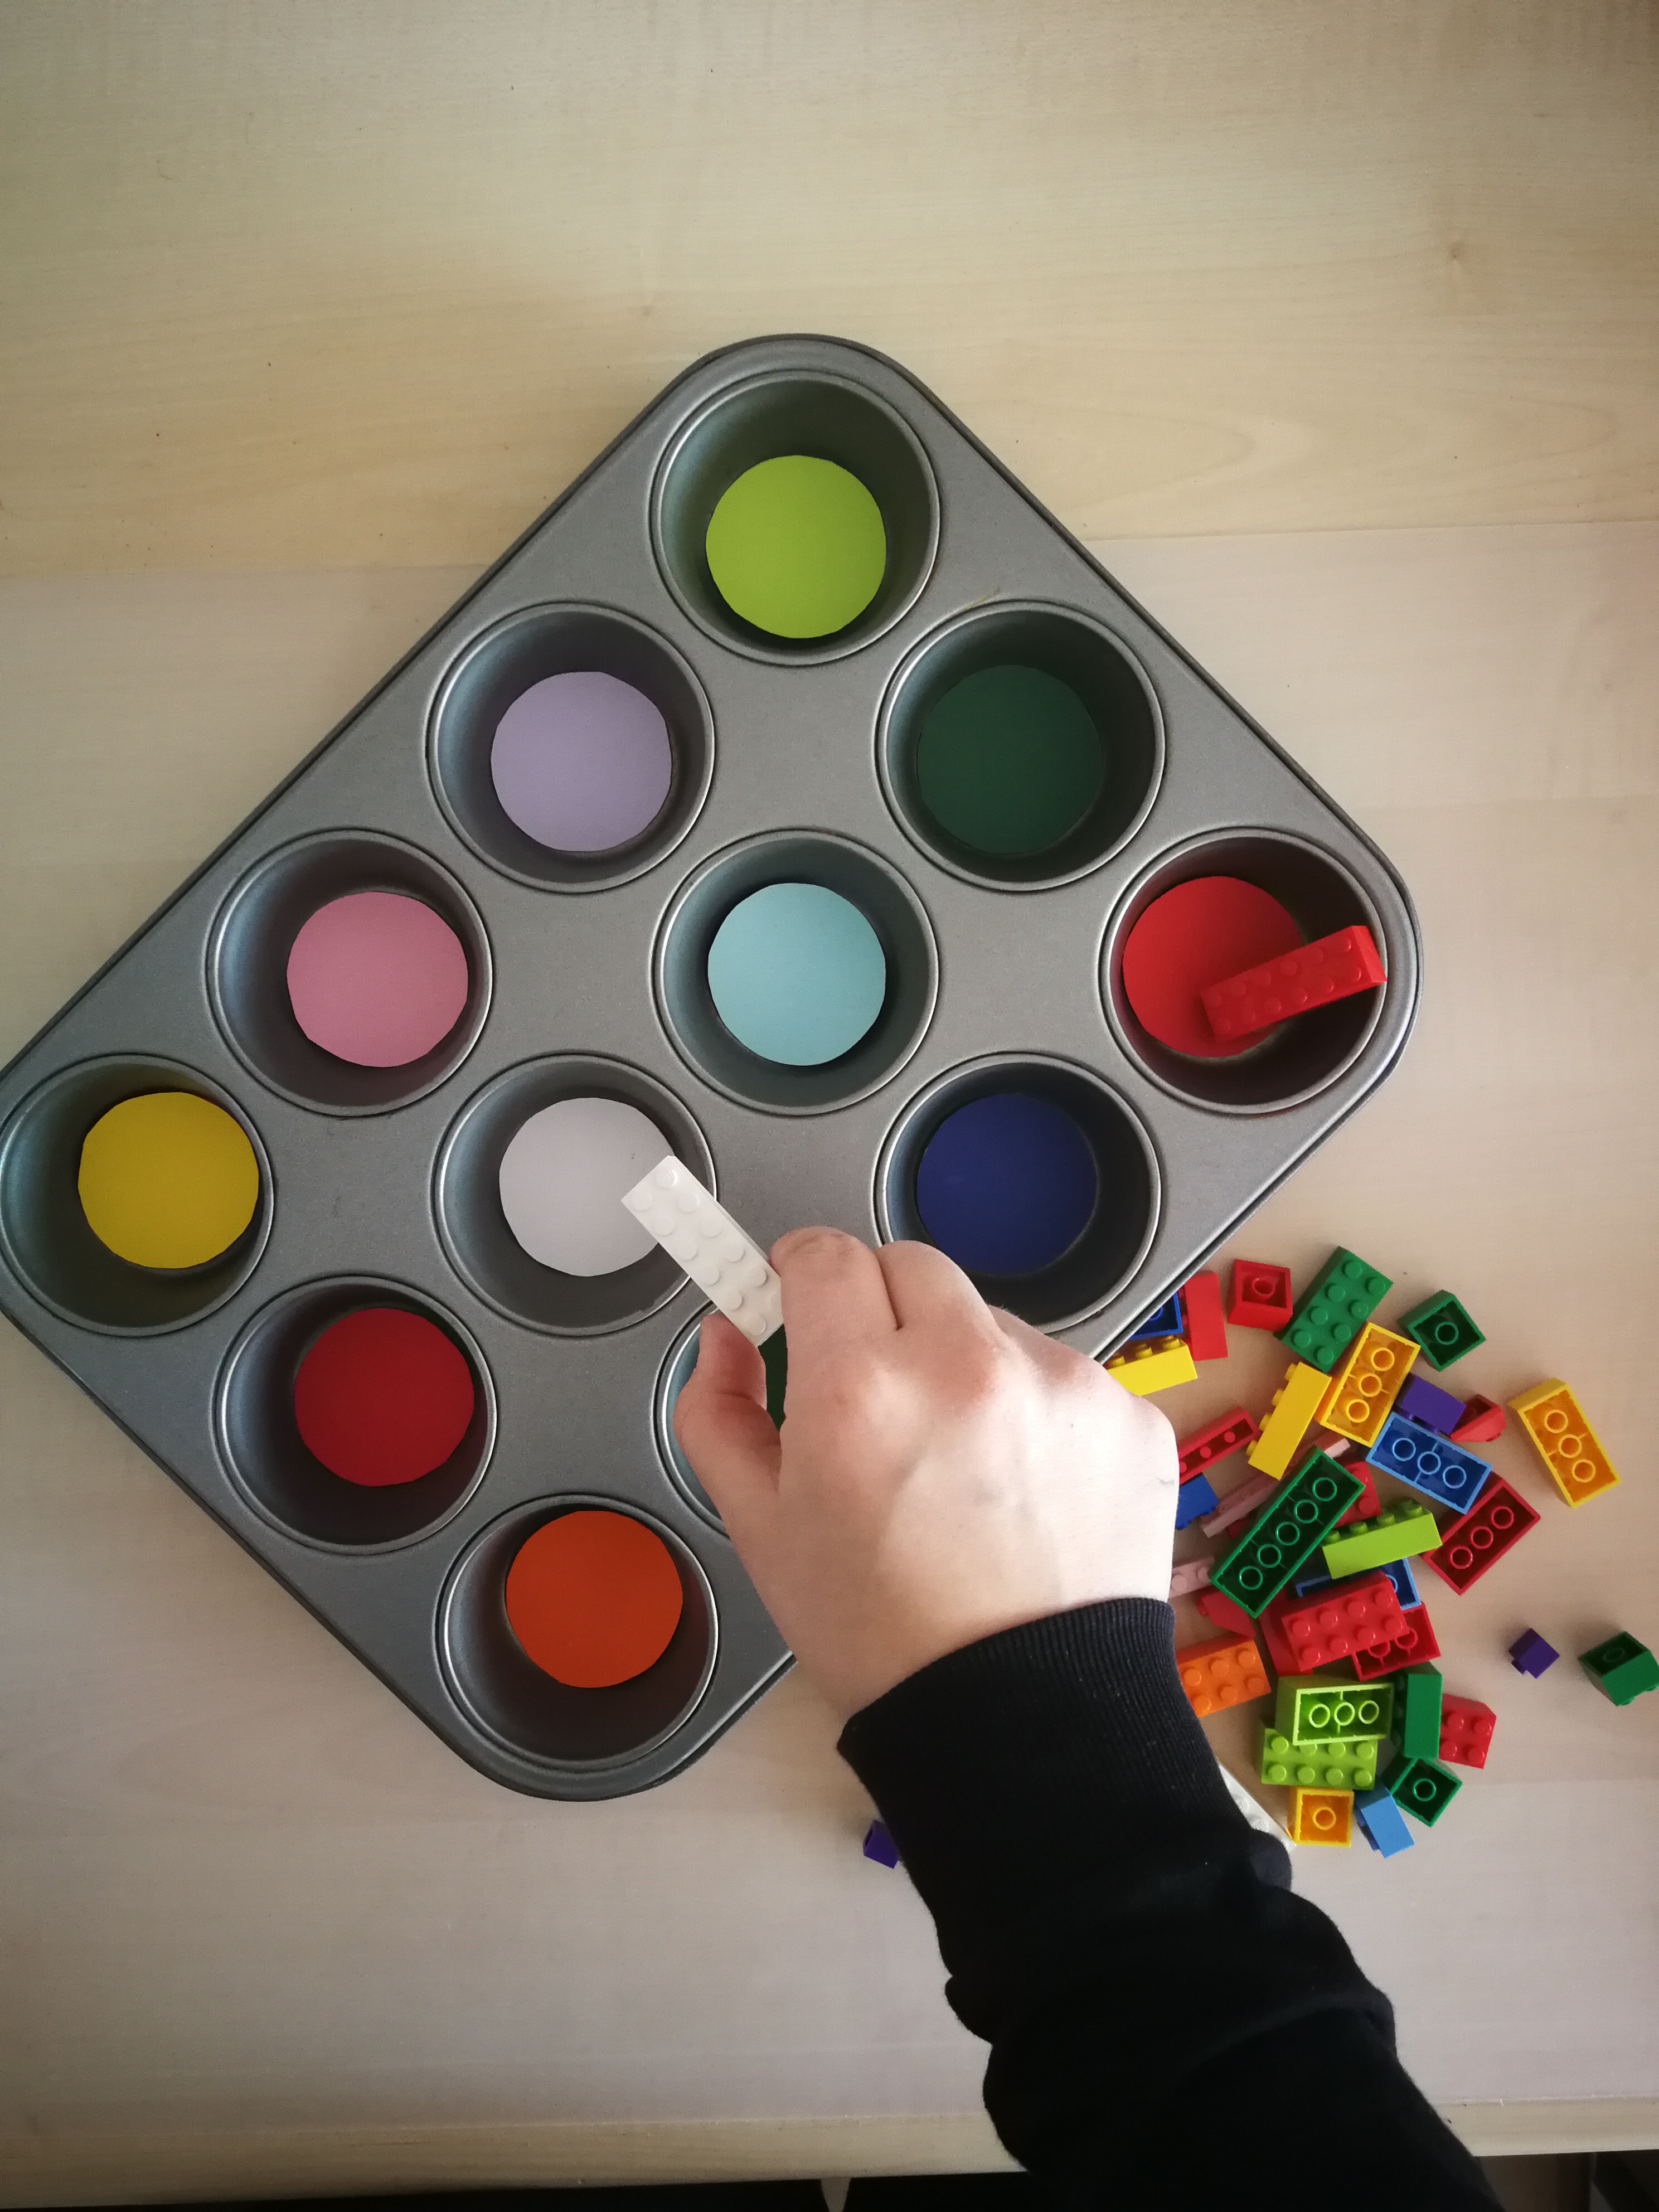 Farbsortierspiel mit Legosteinen